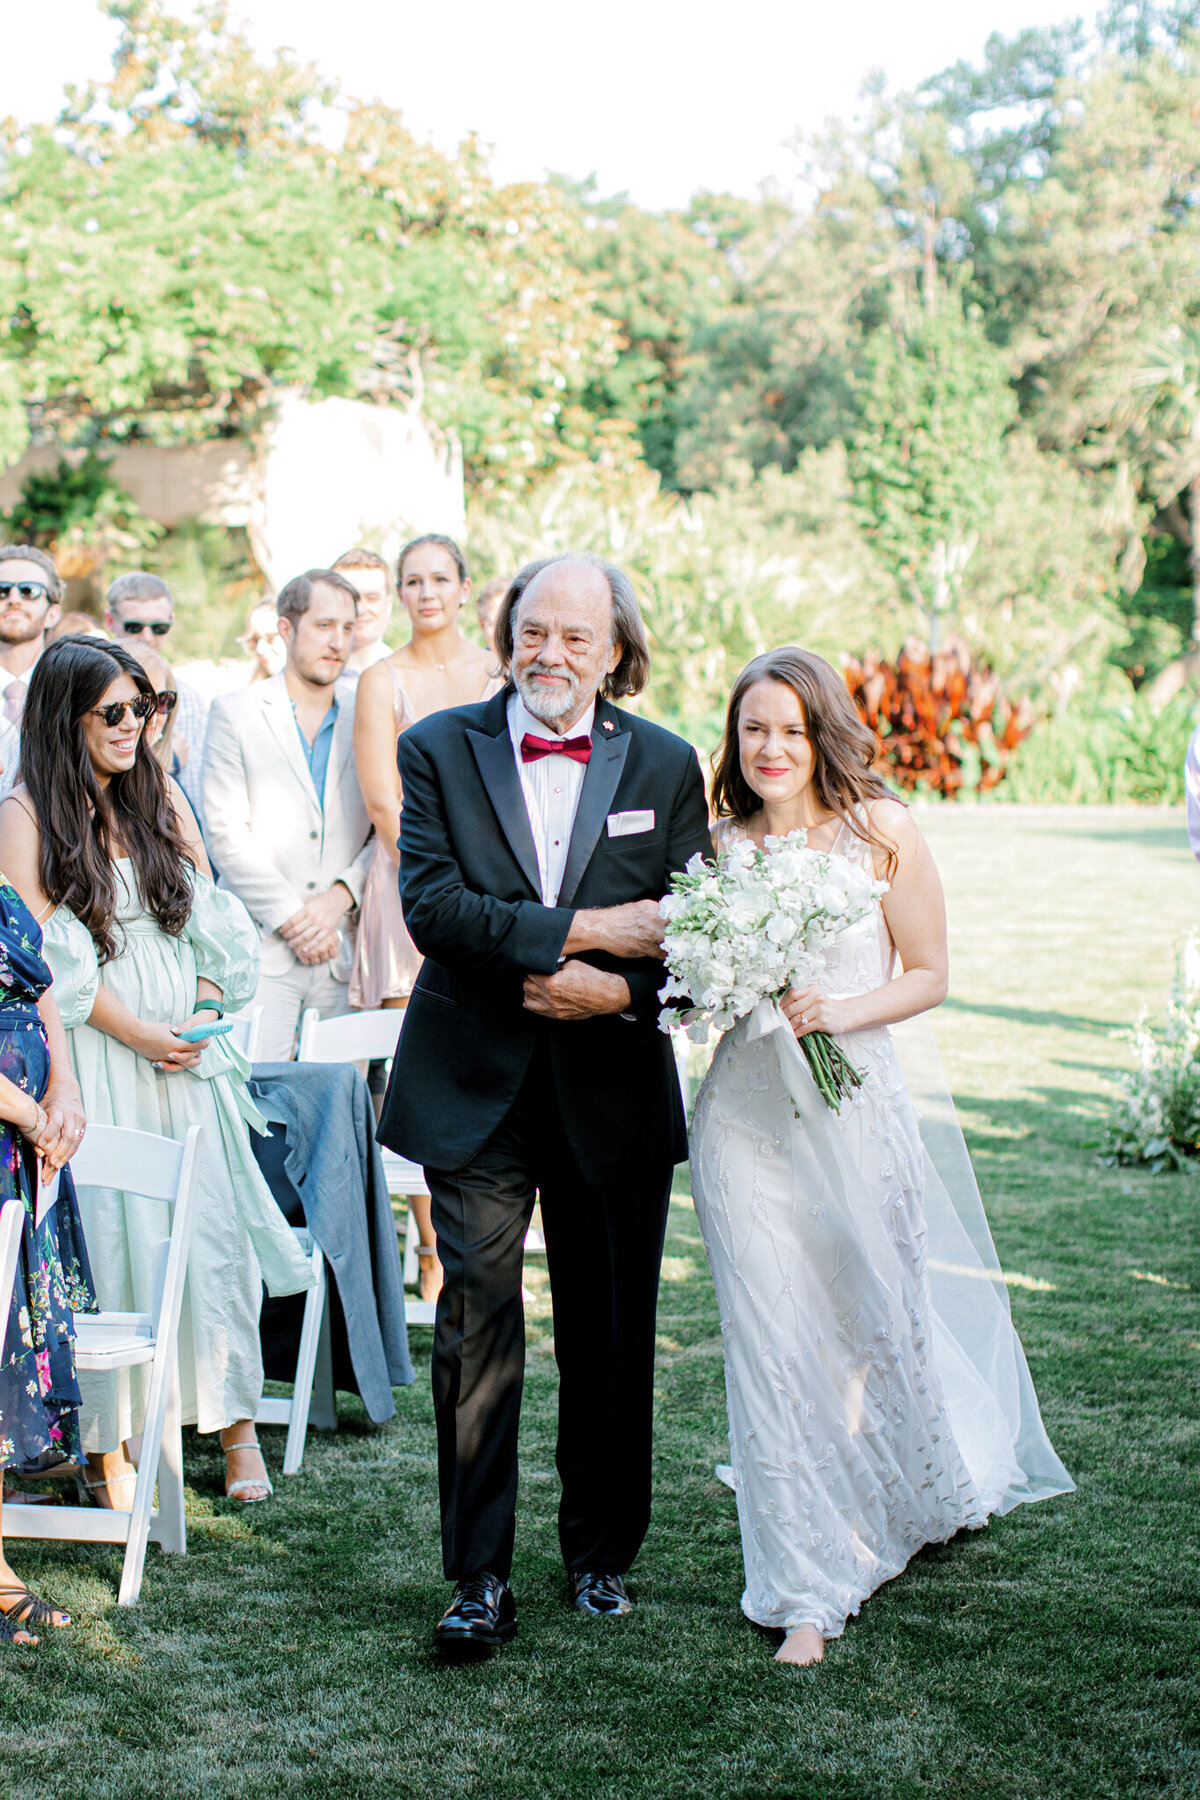 Gena & Matt's Wedding at the Dallas Arboretum | Dallas Wedding Photographer | Sami Kathryn Photography-134